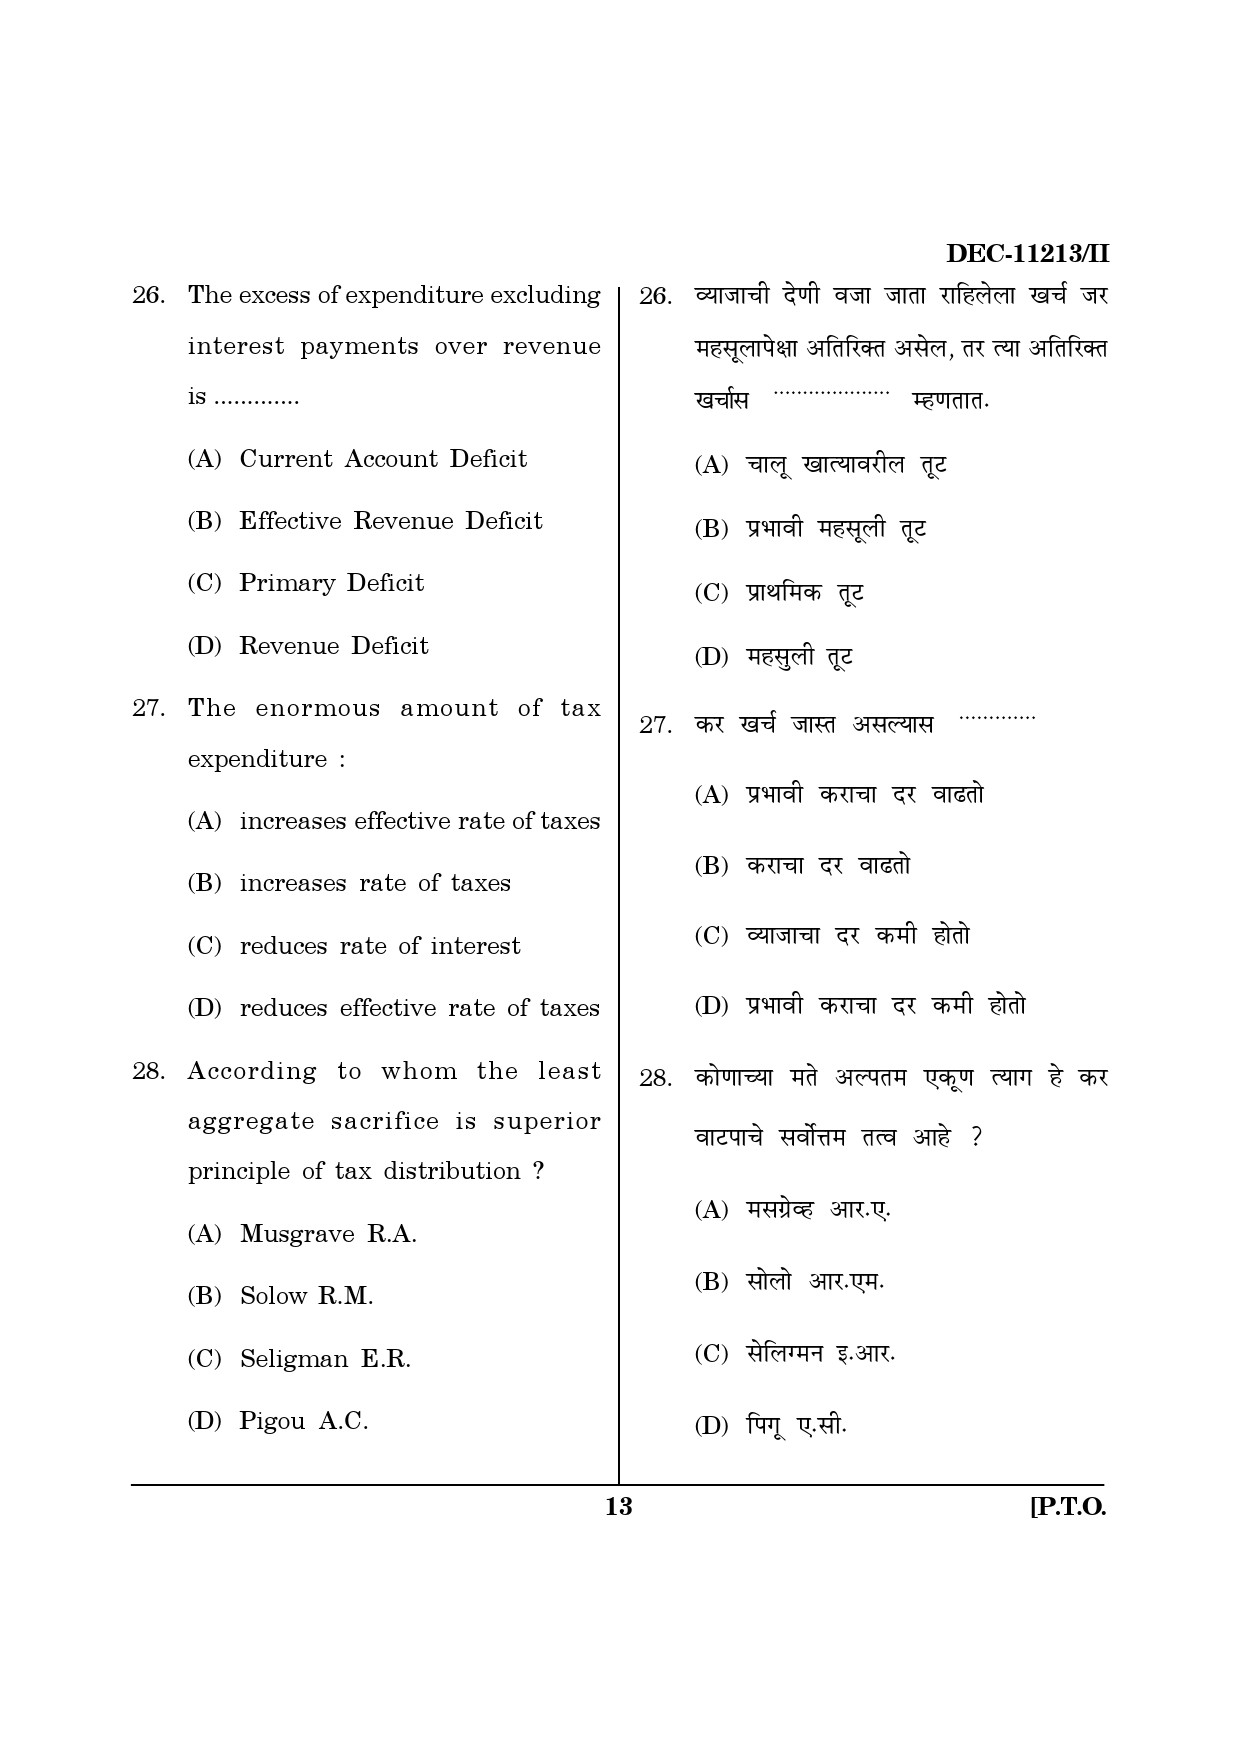 Maharashtra SET Economics Question Paper II December 2013 12